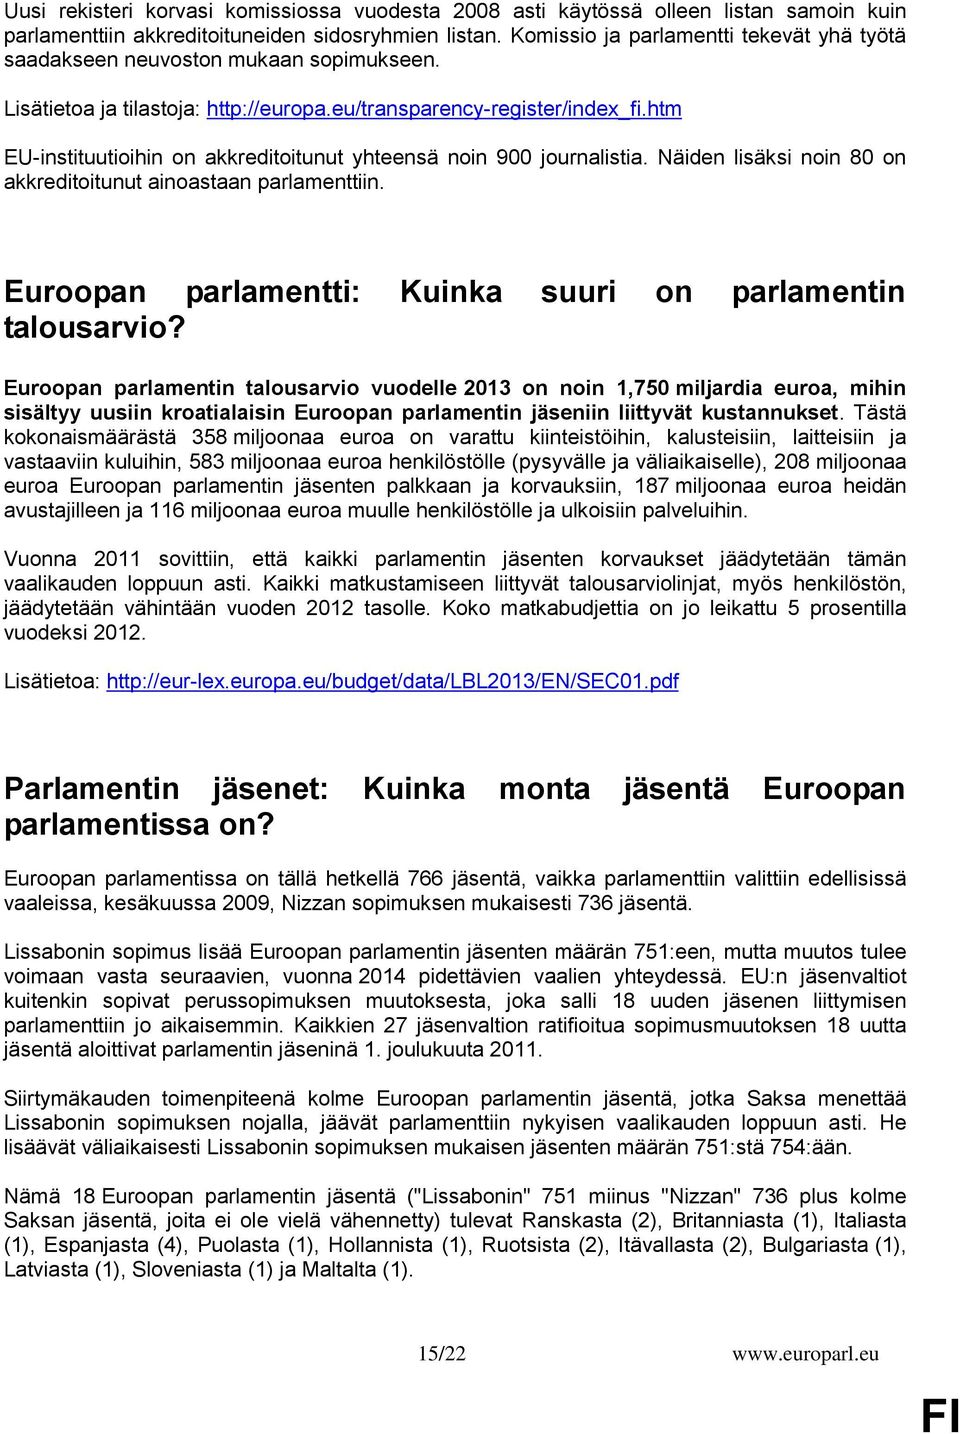 htm EU-instituutioihin on akkreditoitunut yhteensä noin 900 journalistia. Näiden lisäksi noin 80 on akkreditoitunut ainoastaan parlamenttiin.